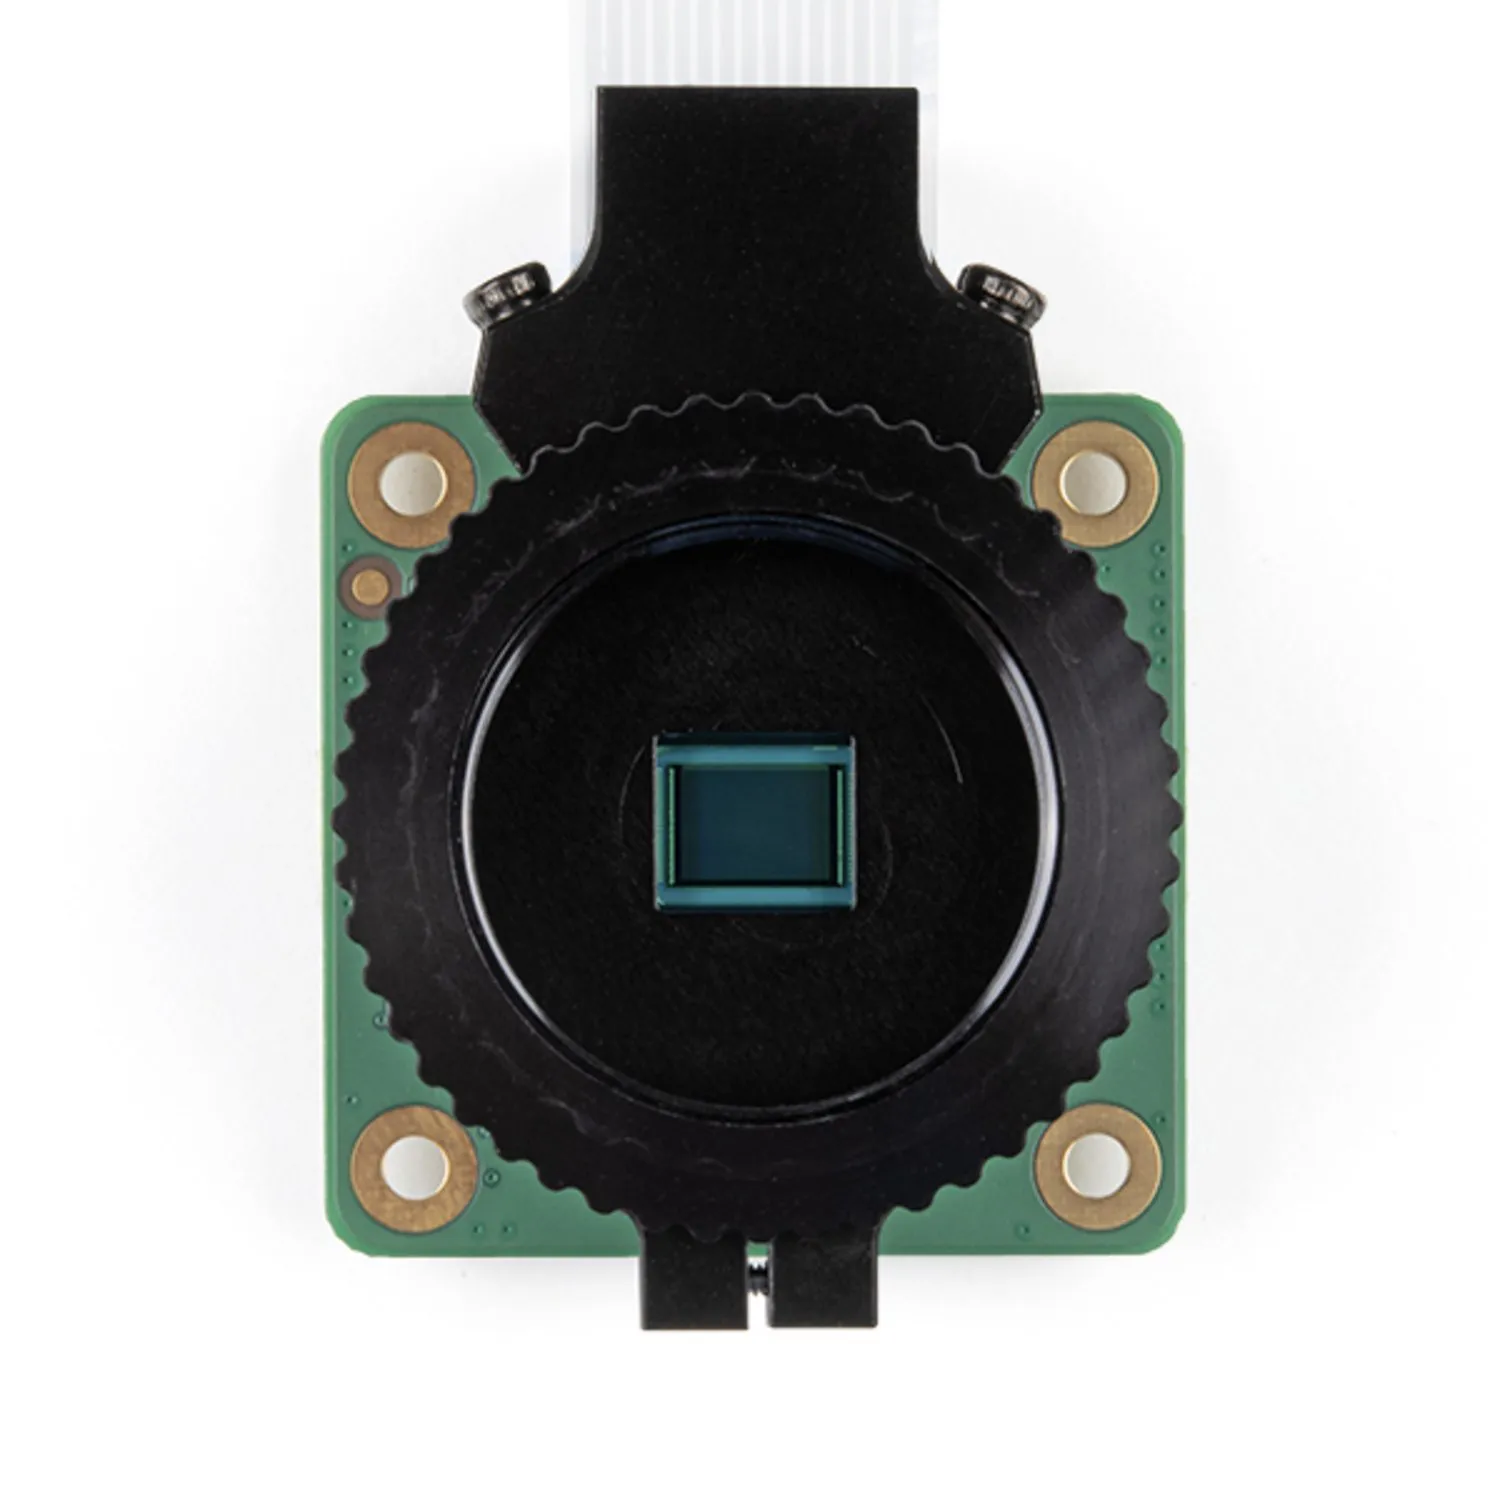 Photo of Raspberry Pi HQ Camera Module